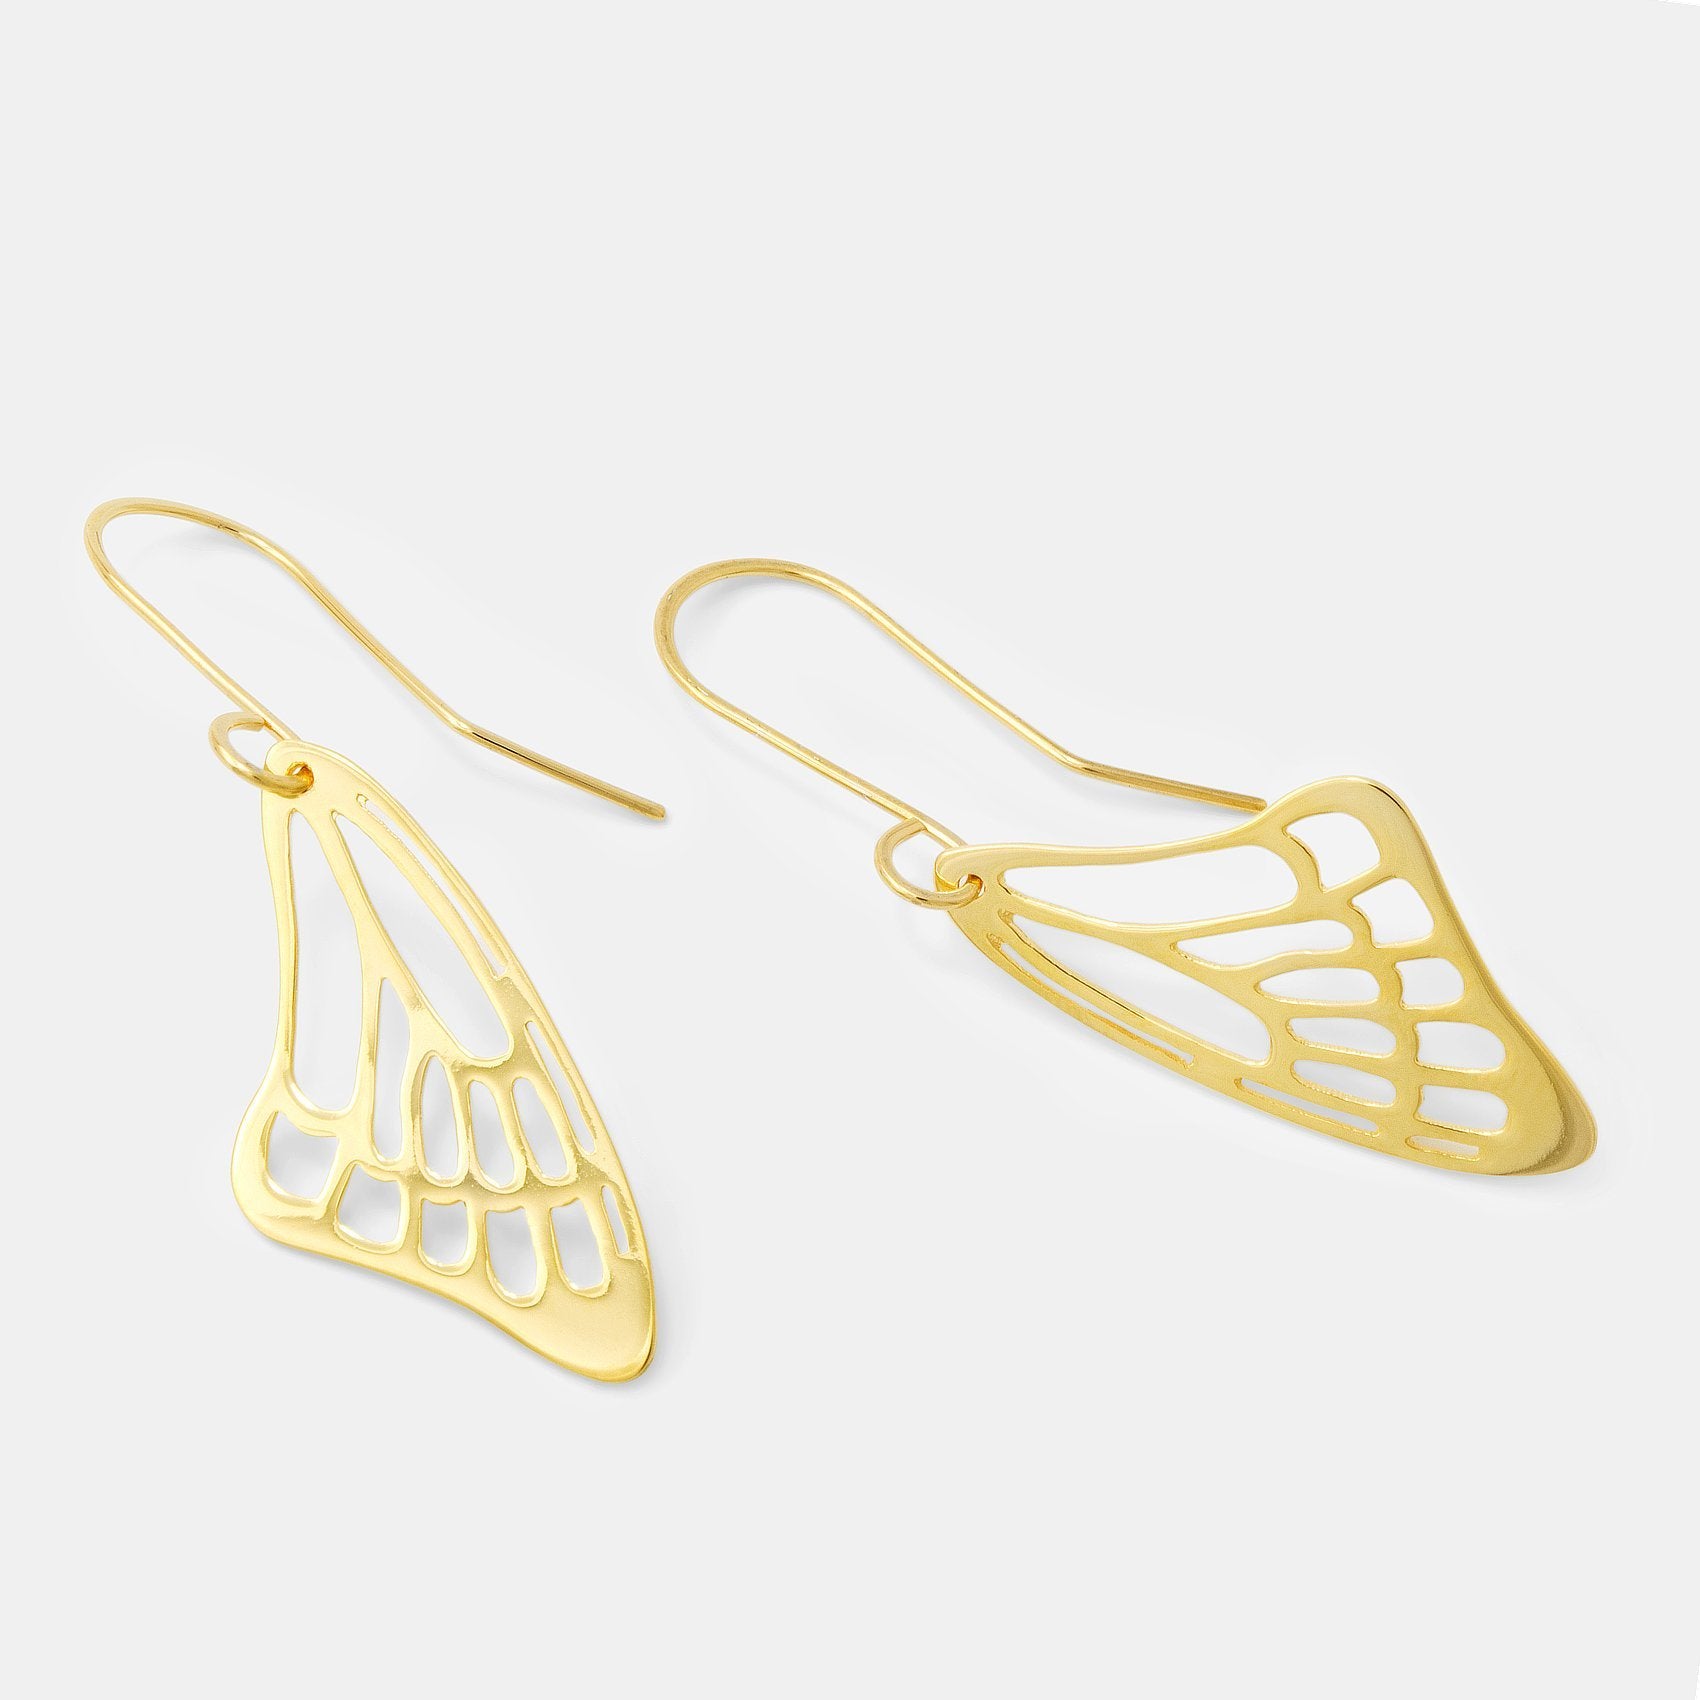 Butterfly wing gold earrings - Simone Walsh Jewellery Australia